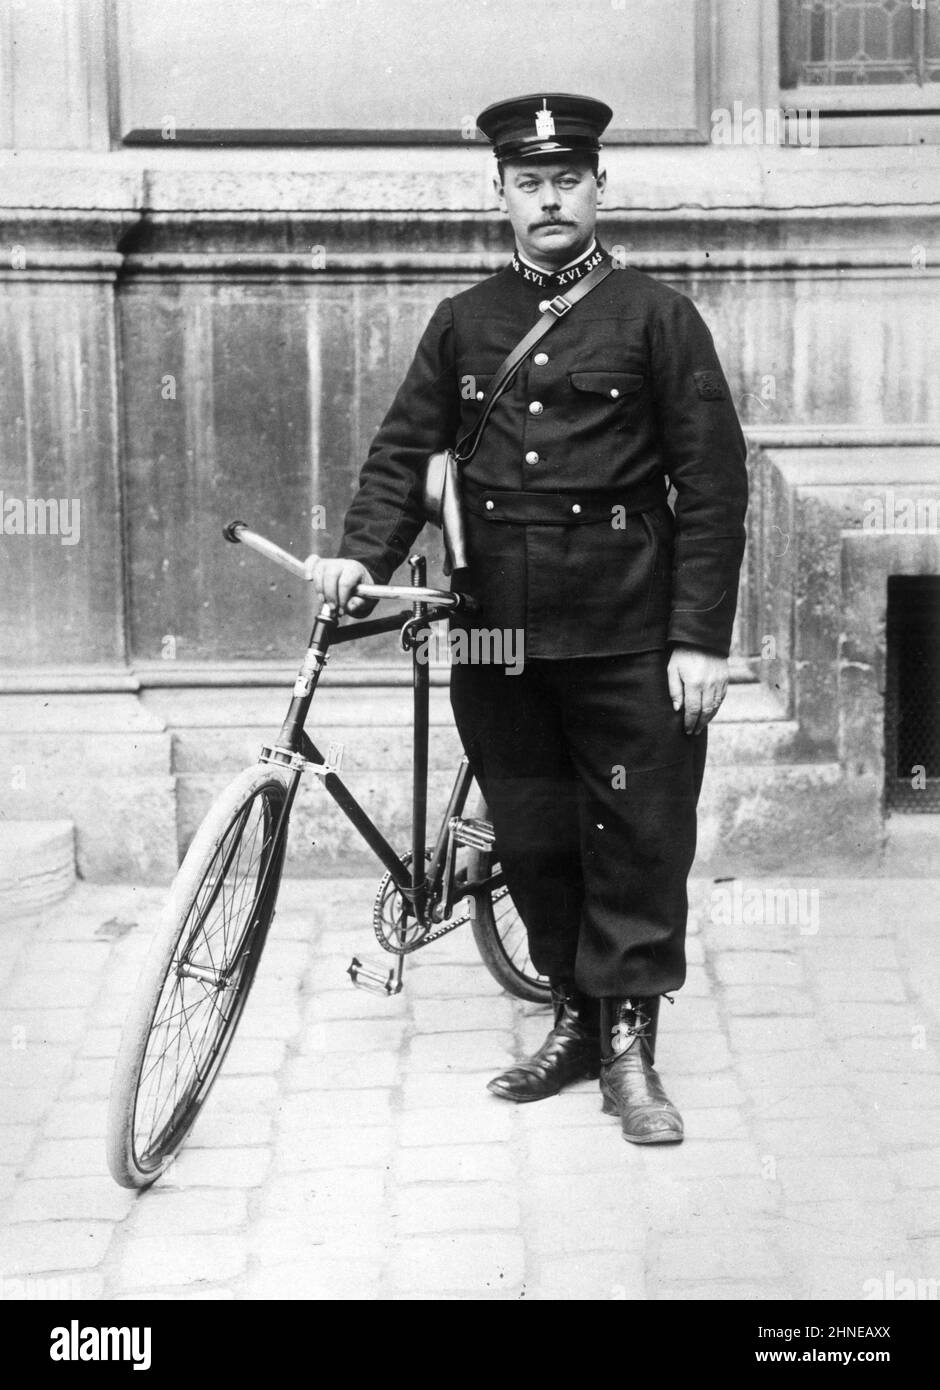 Agent cycliste parisien de M. Lepine - Photographie - L'Agent cycliste à été créé par le Préfet de Police Louis Lépine en 1900 pour assurer une Surveillance de nuit dans les Quartiers de Paris. Stockfoto